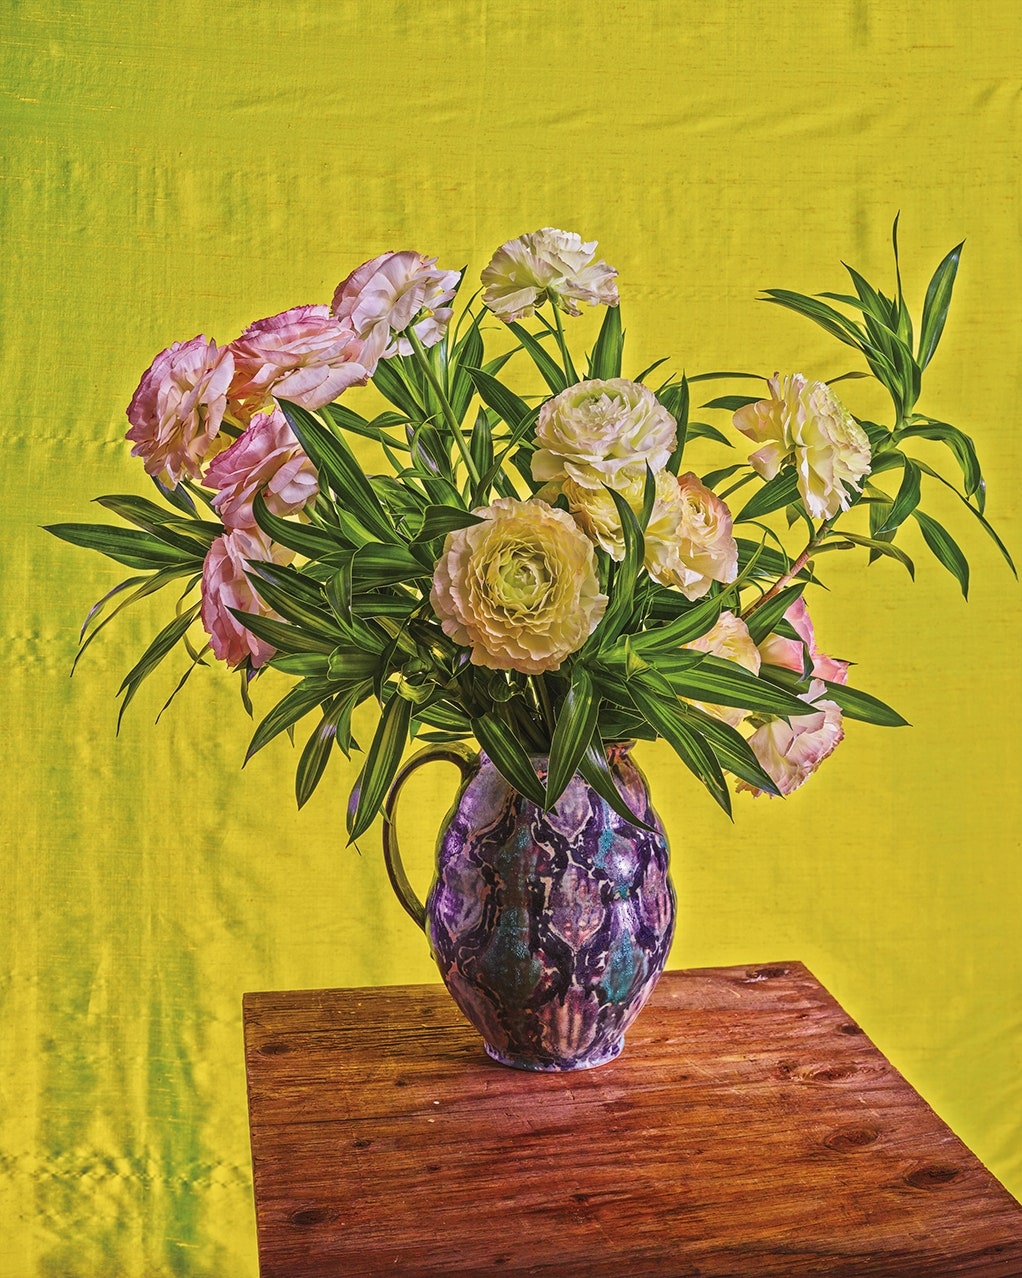 The Best Flower Vases for Spring